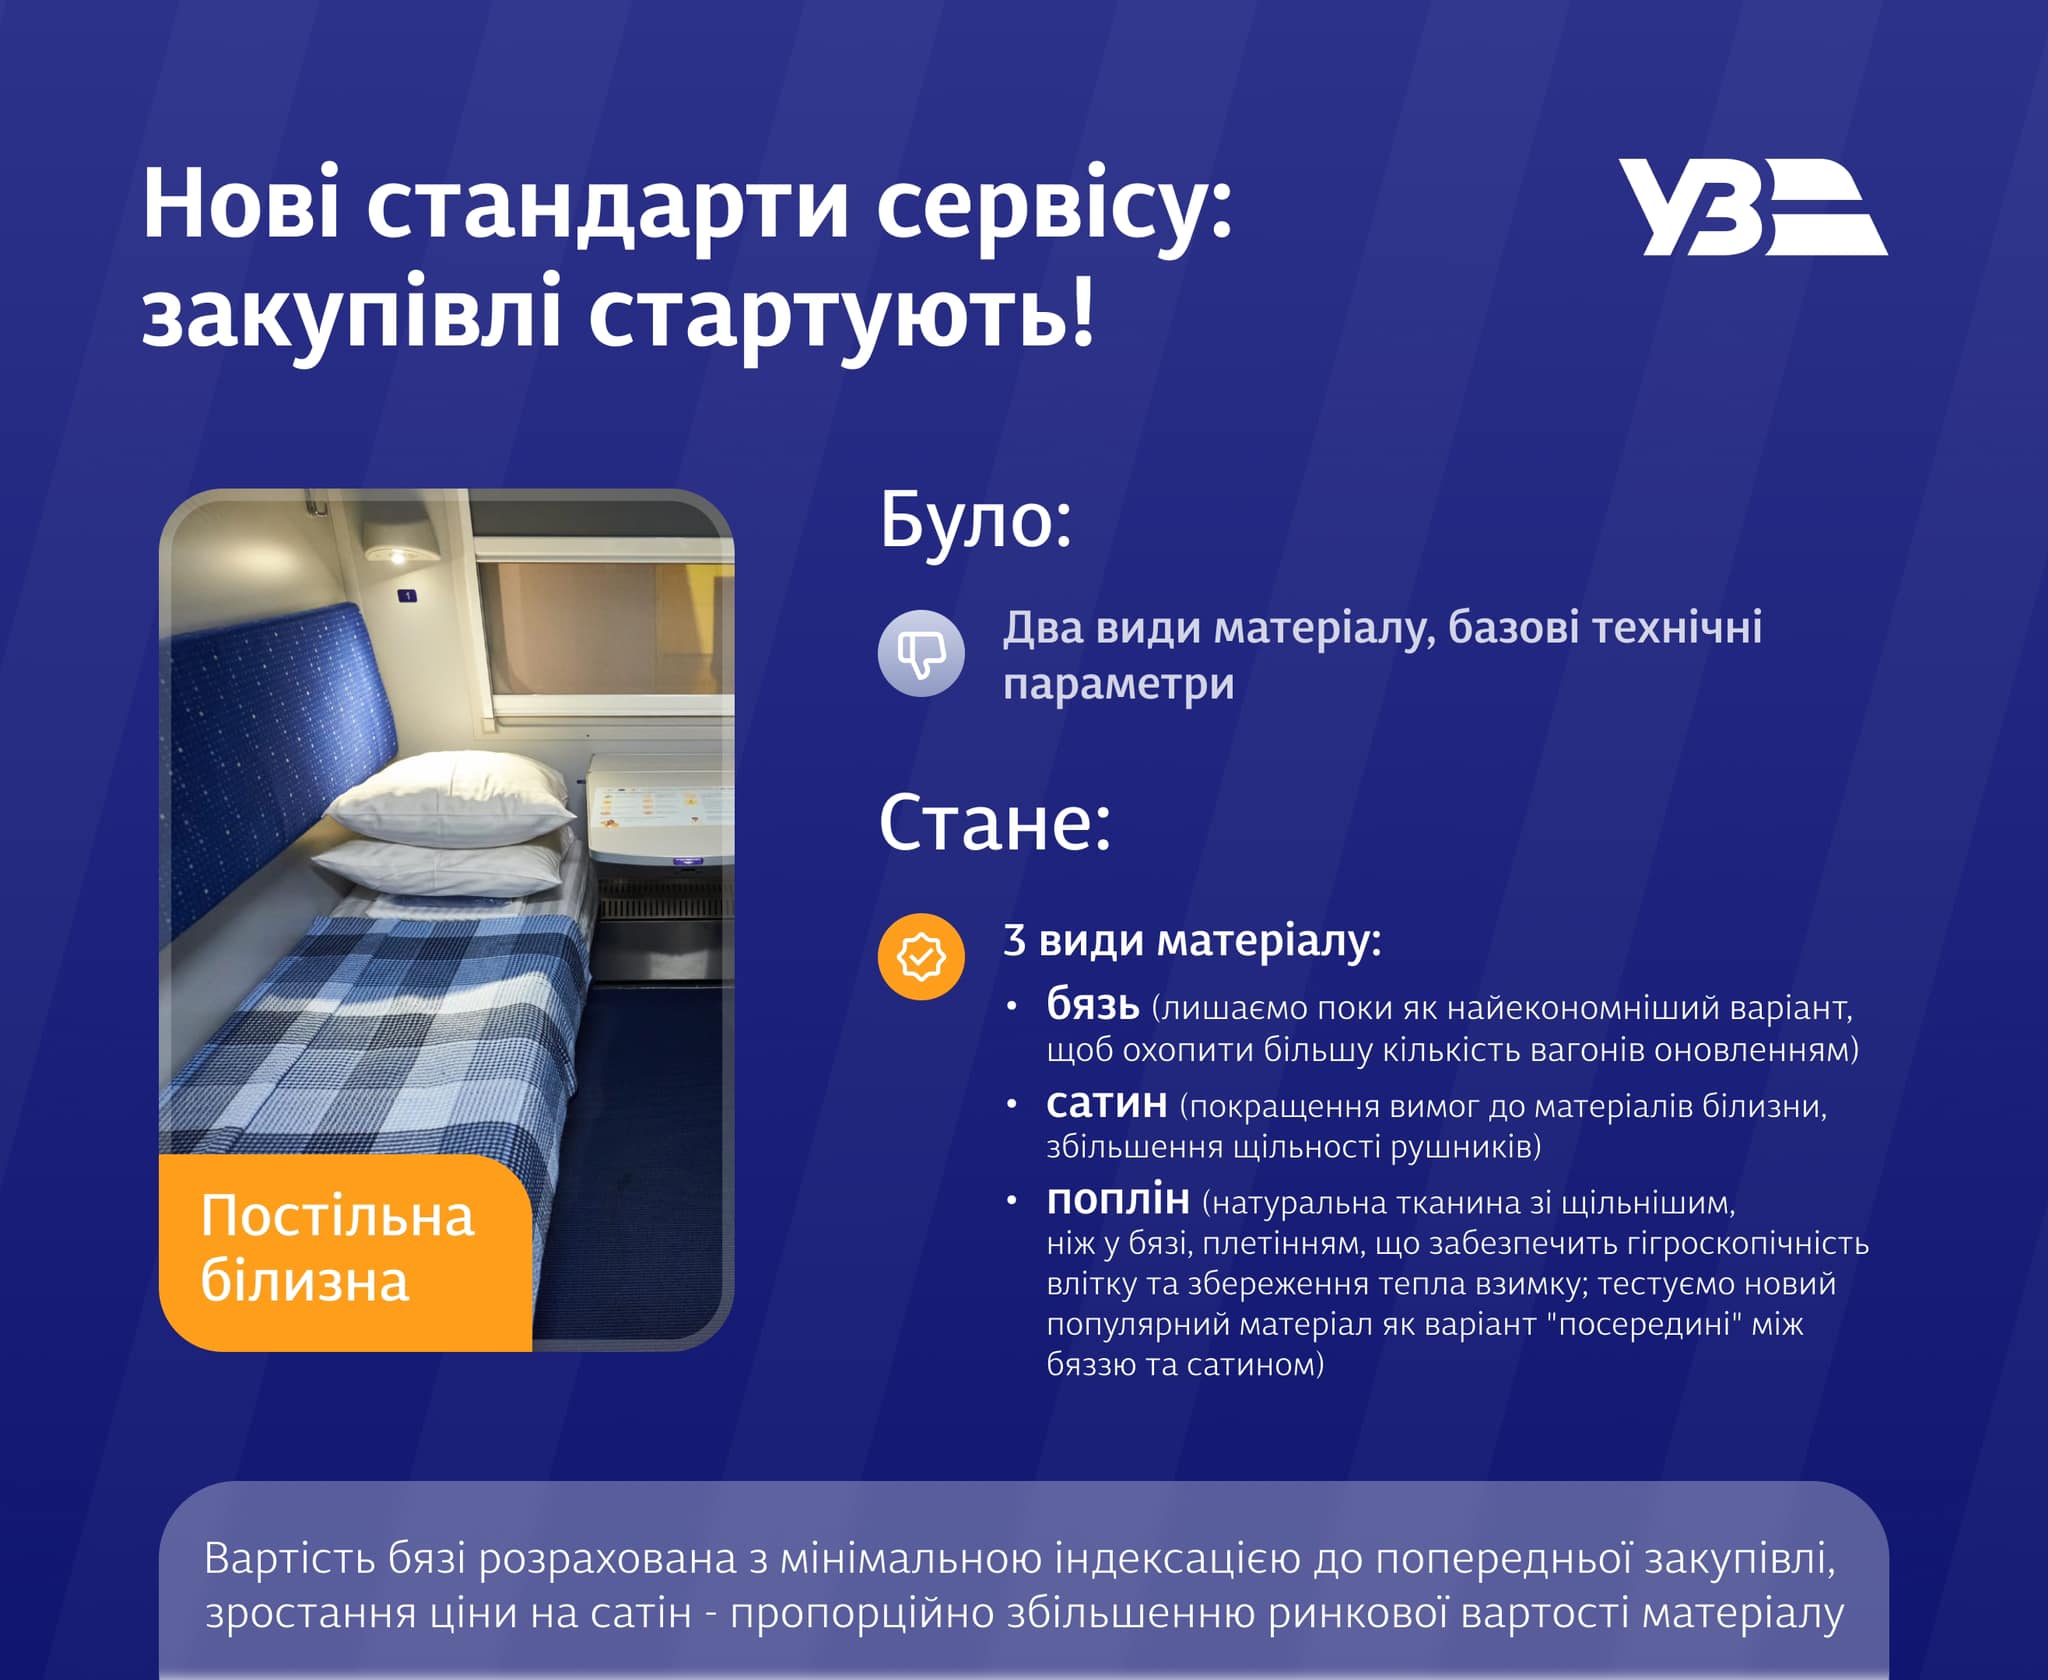 Укрзалізниця обновит постель в поездах: объявлены тендеры на 32 млн грн